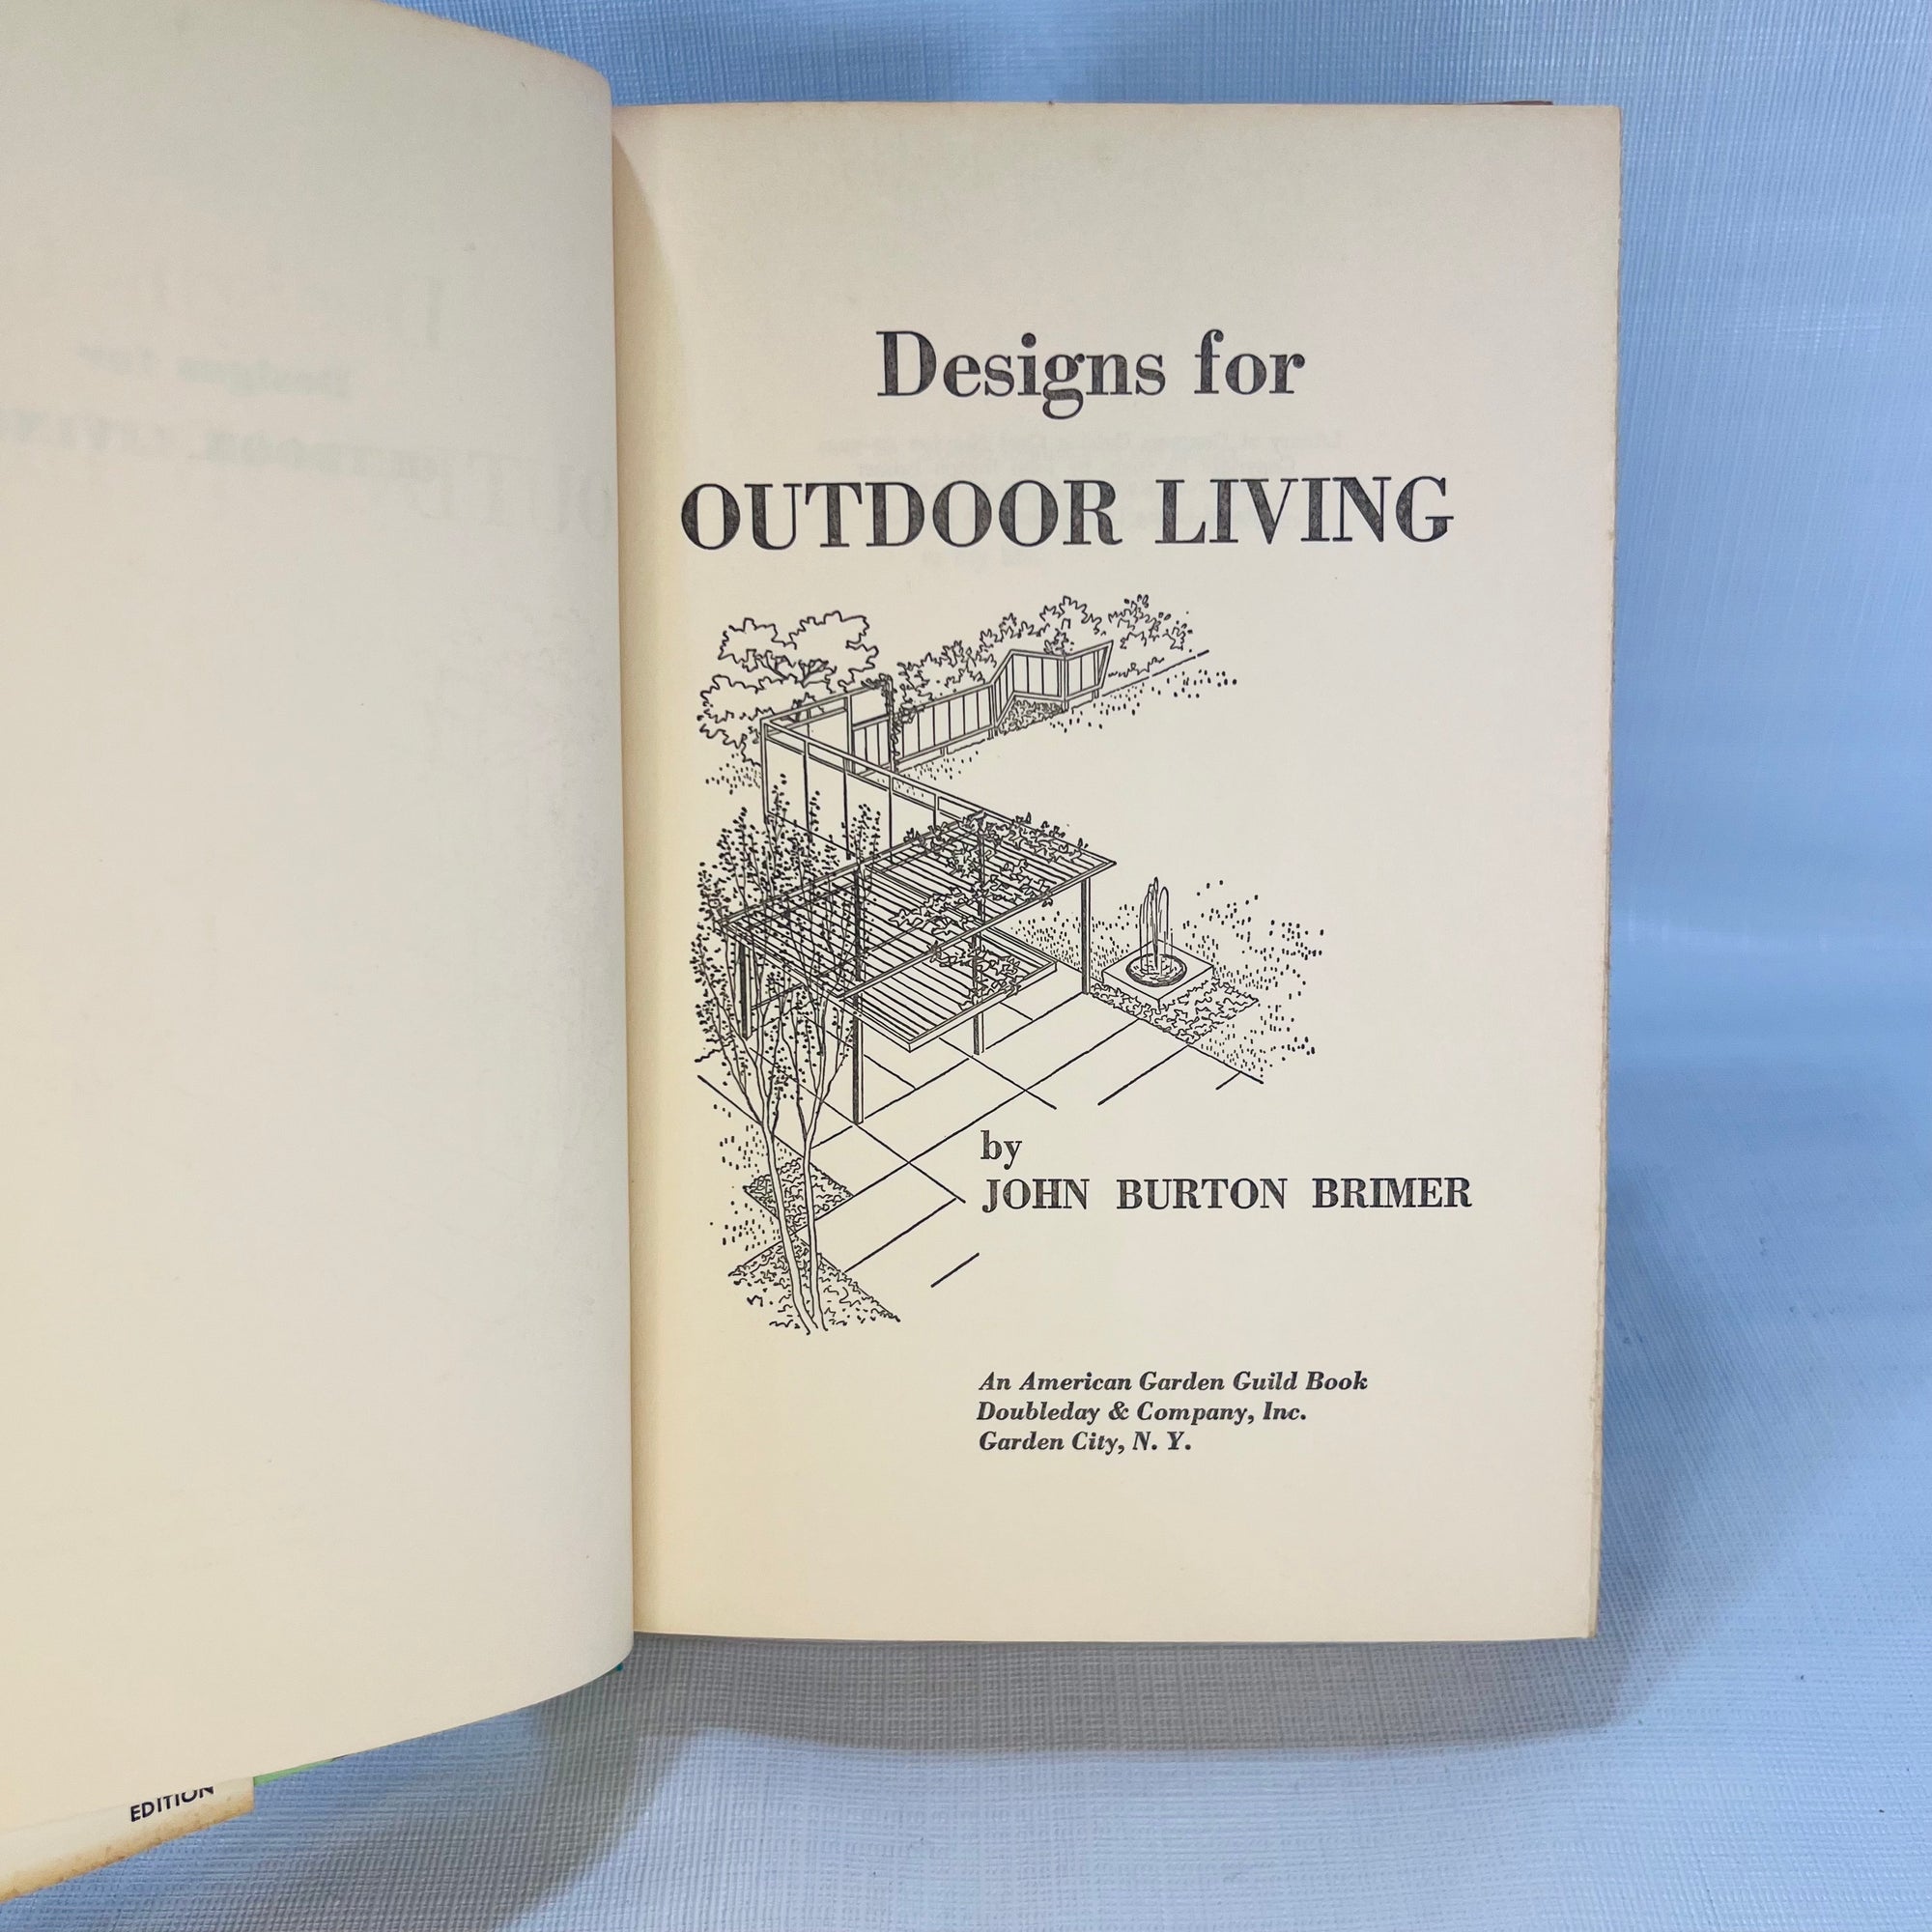 Designs for Outdoor Living by John Burton Brimer 1959 An American Garden Guild Book